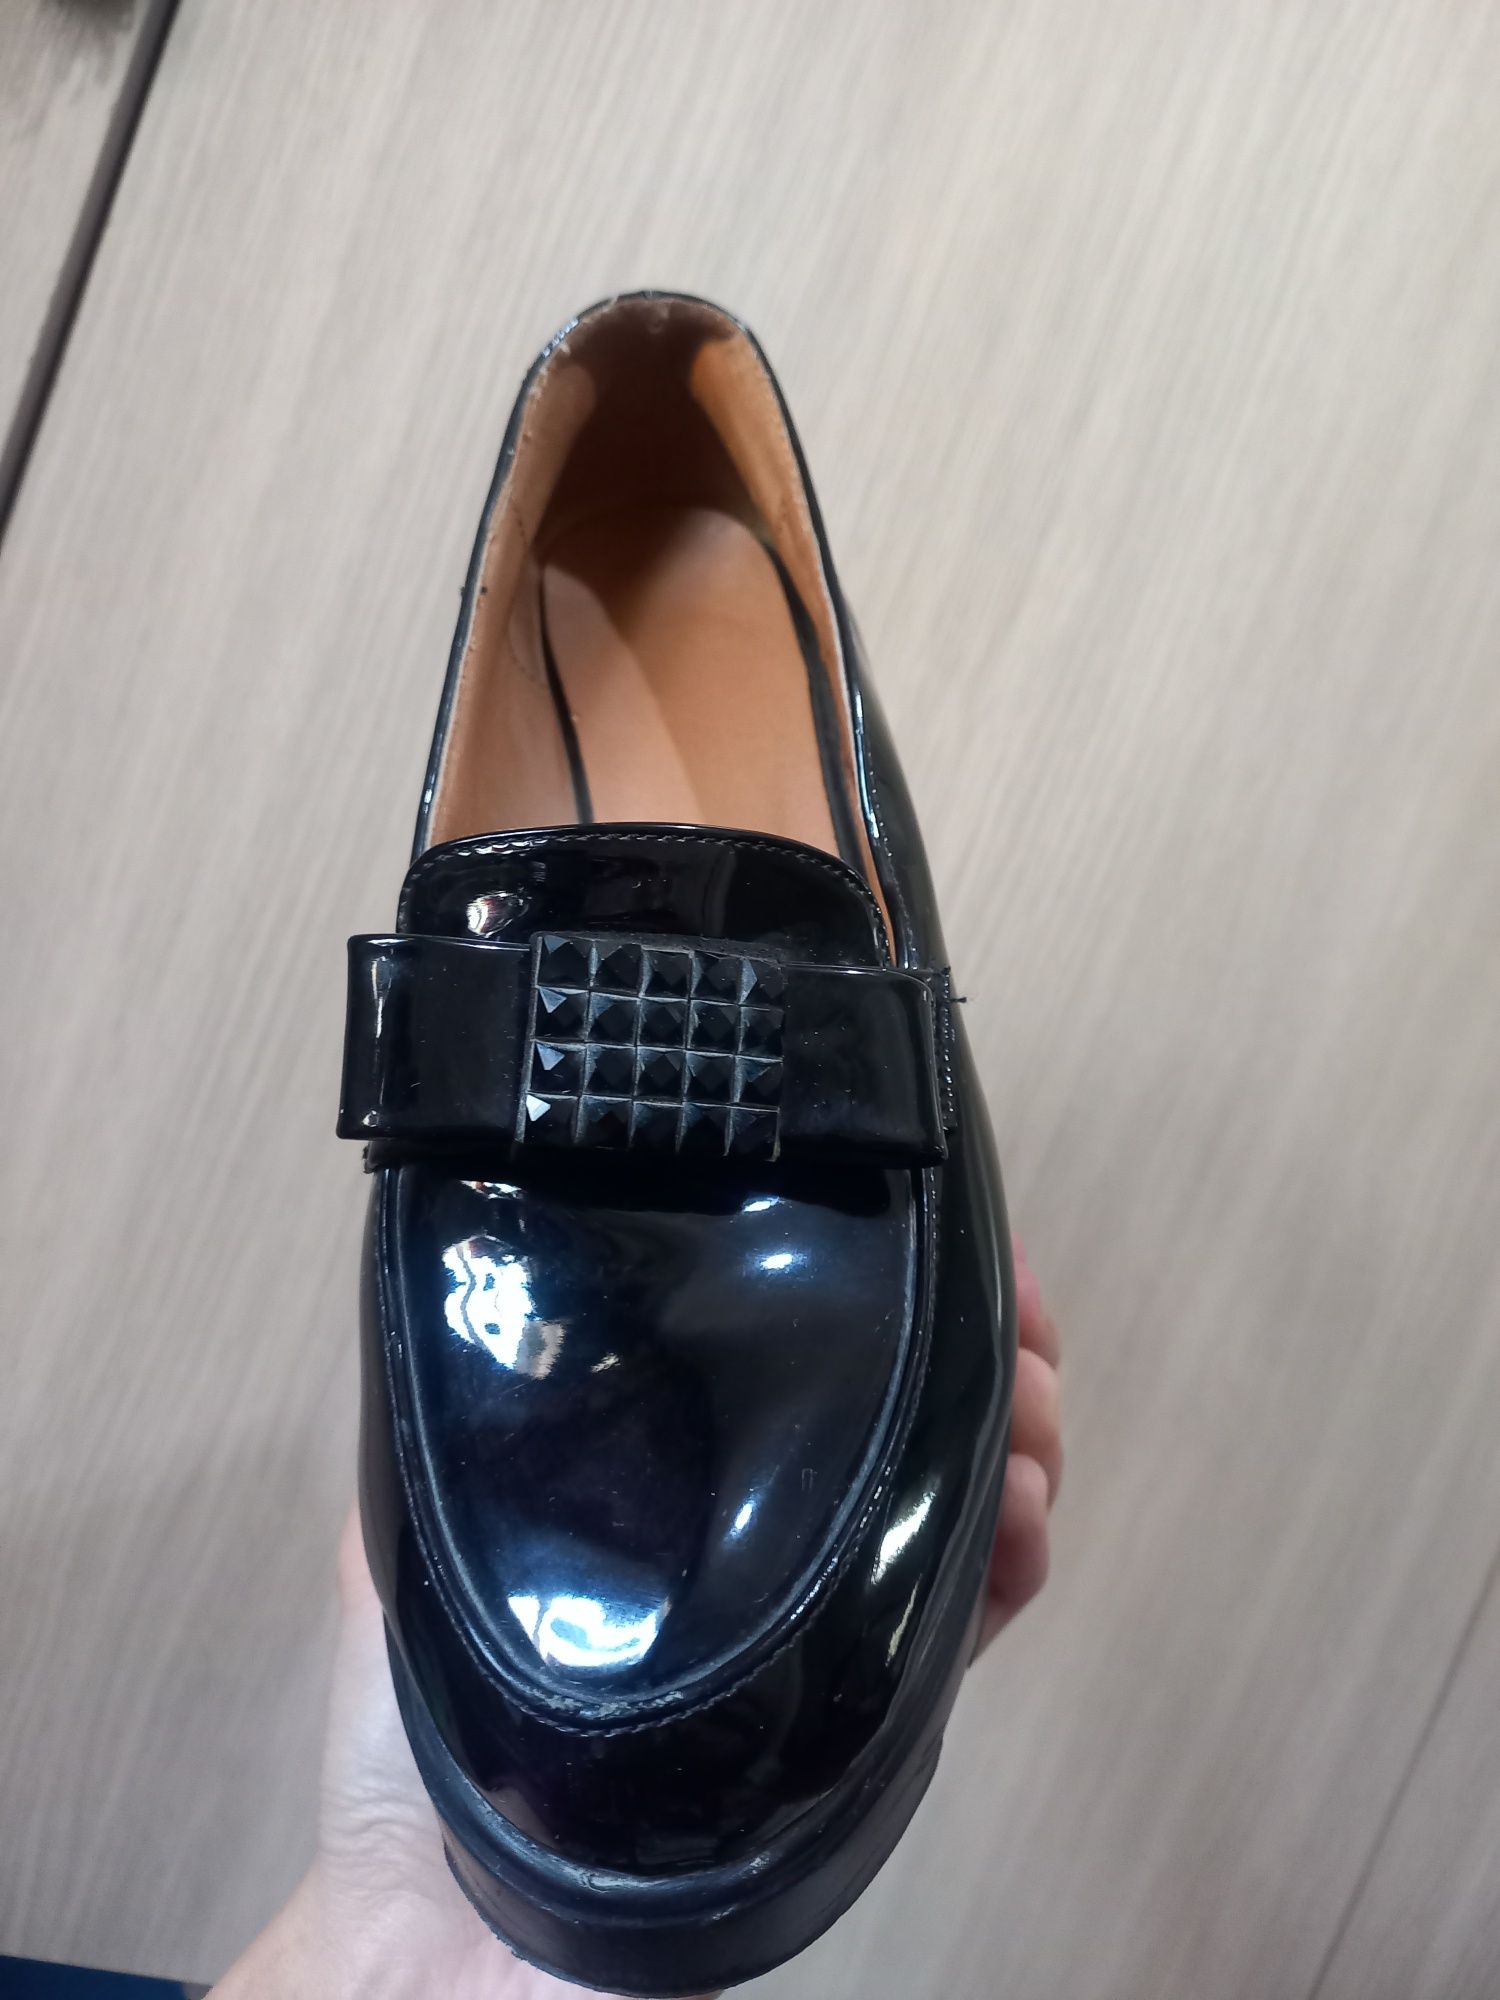 Женские туфли чёрного цвета.